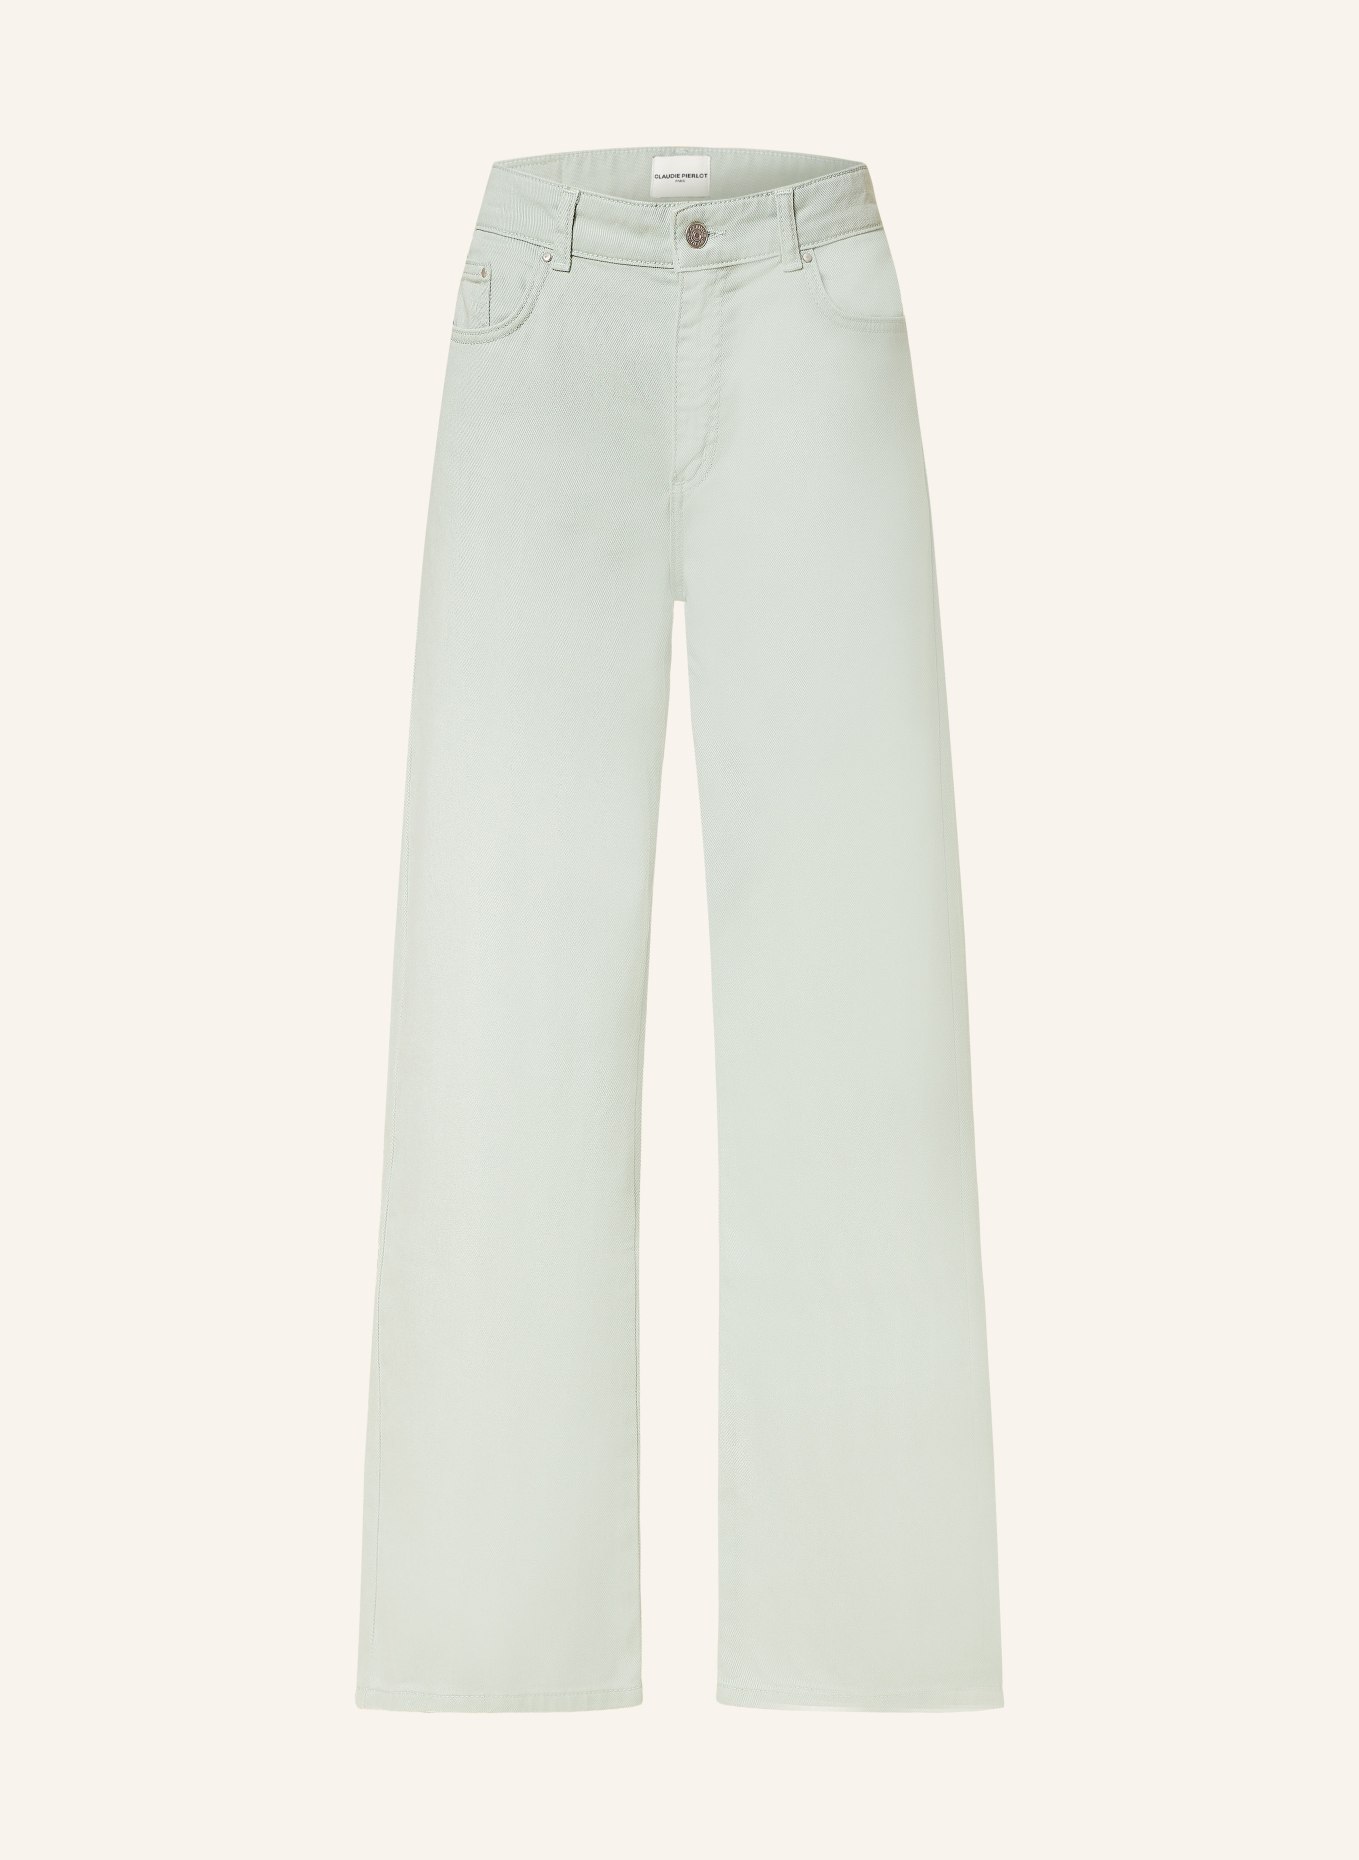 CLAUDIE PIERLOT Boyfriend Jeans, Farbe: 652 ALMOND (Bild 1)